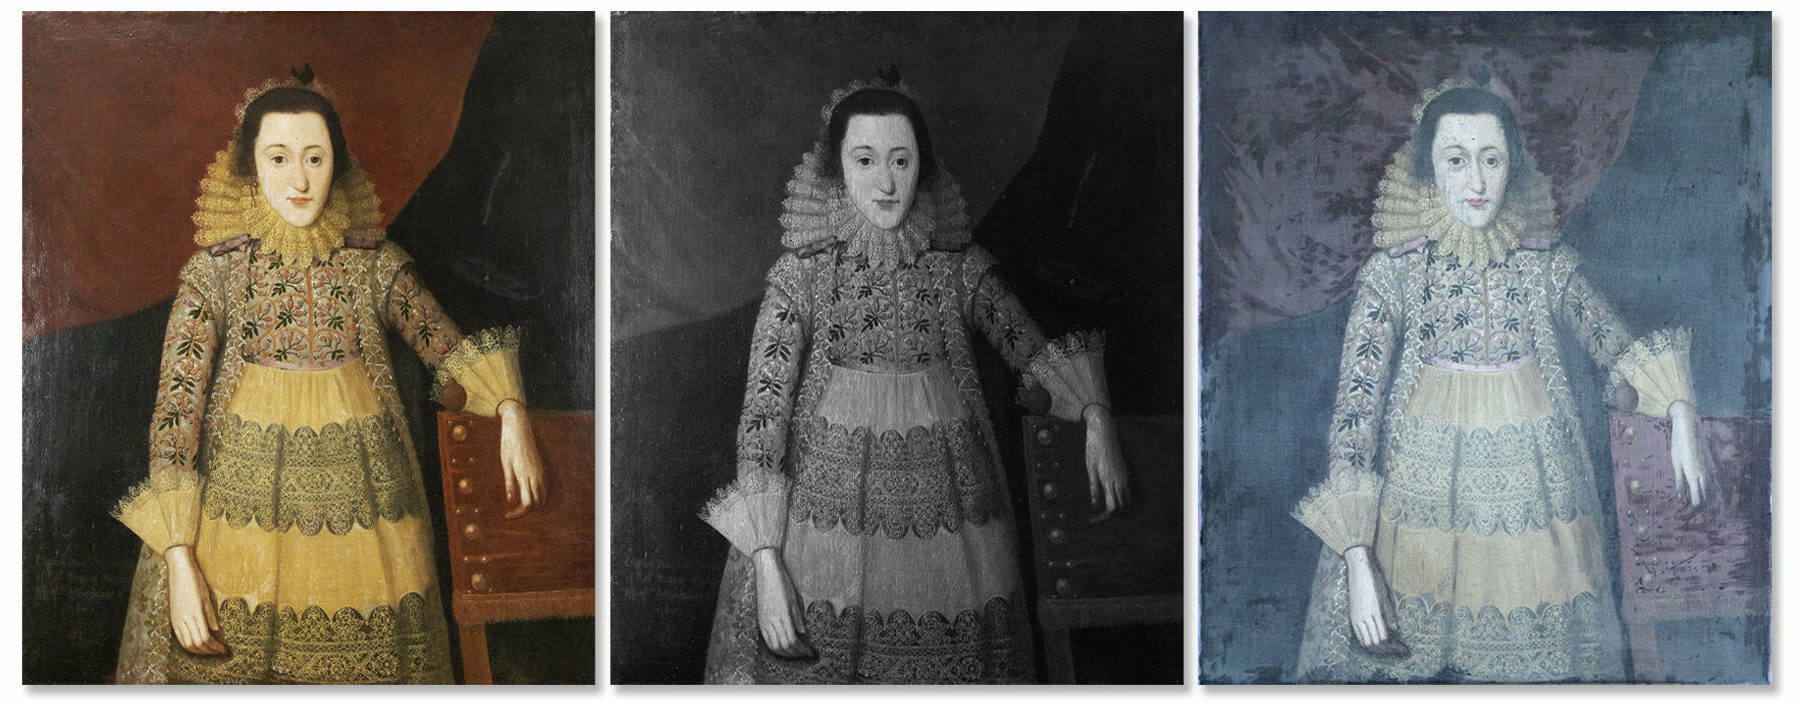 Elizabethan portrait technical imagery